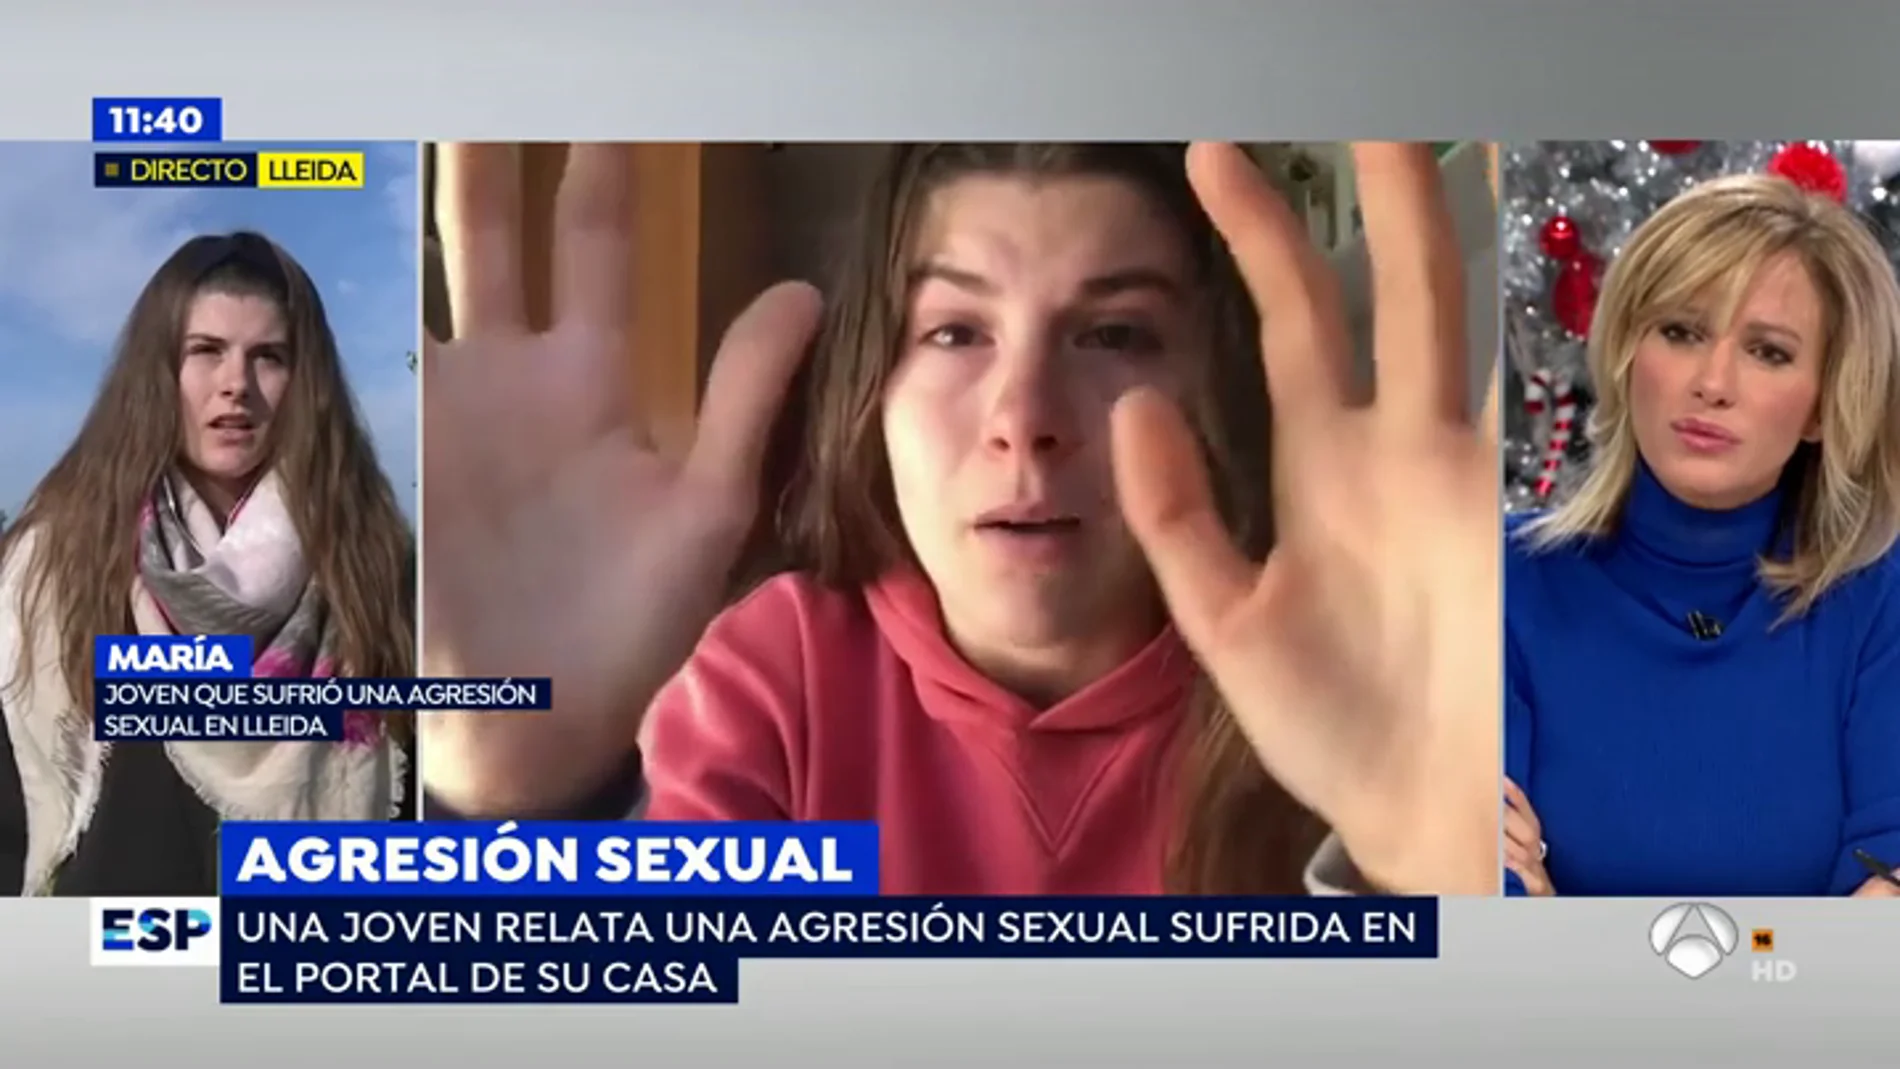 Una joven de 19 años denuncia una agresión sexual en su portal: "Muchos hombres no me creen y piensan que solo busco protagonismo" 